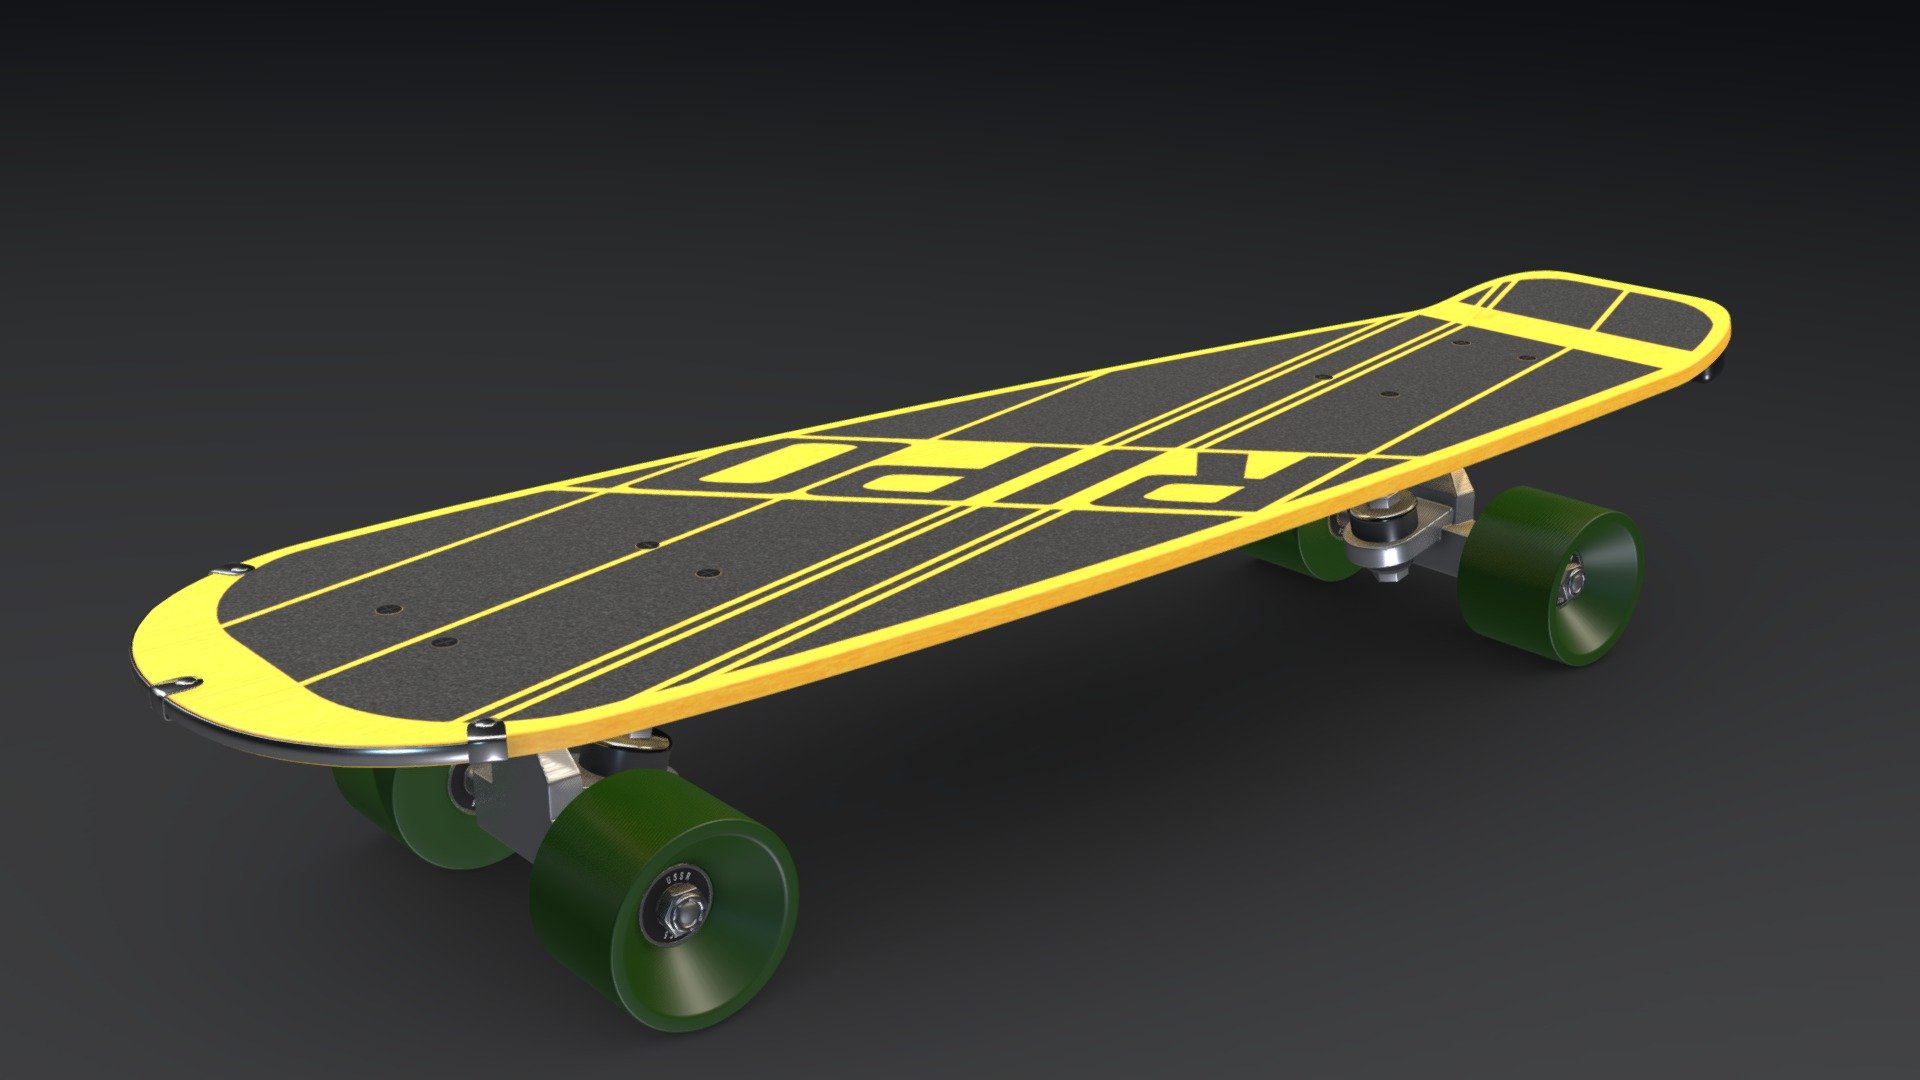 LSSR board - RIPO LSSR skateboard 1980s - Buy Royalty Free 3D model by Geug 3d model